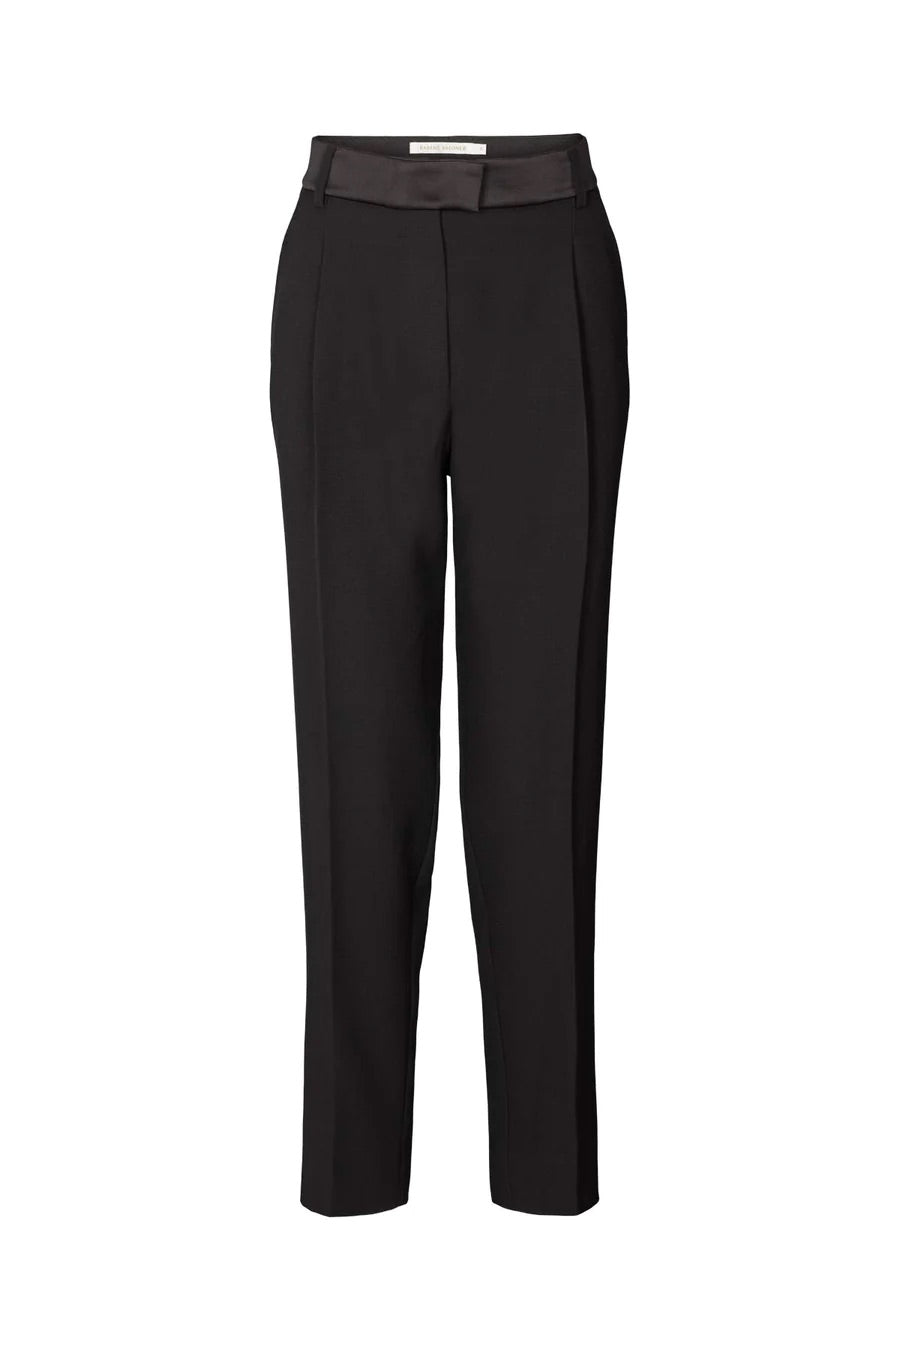 Rabens Saloner Helen Light Tailoring Easy Pant Black W23104165